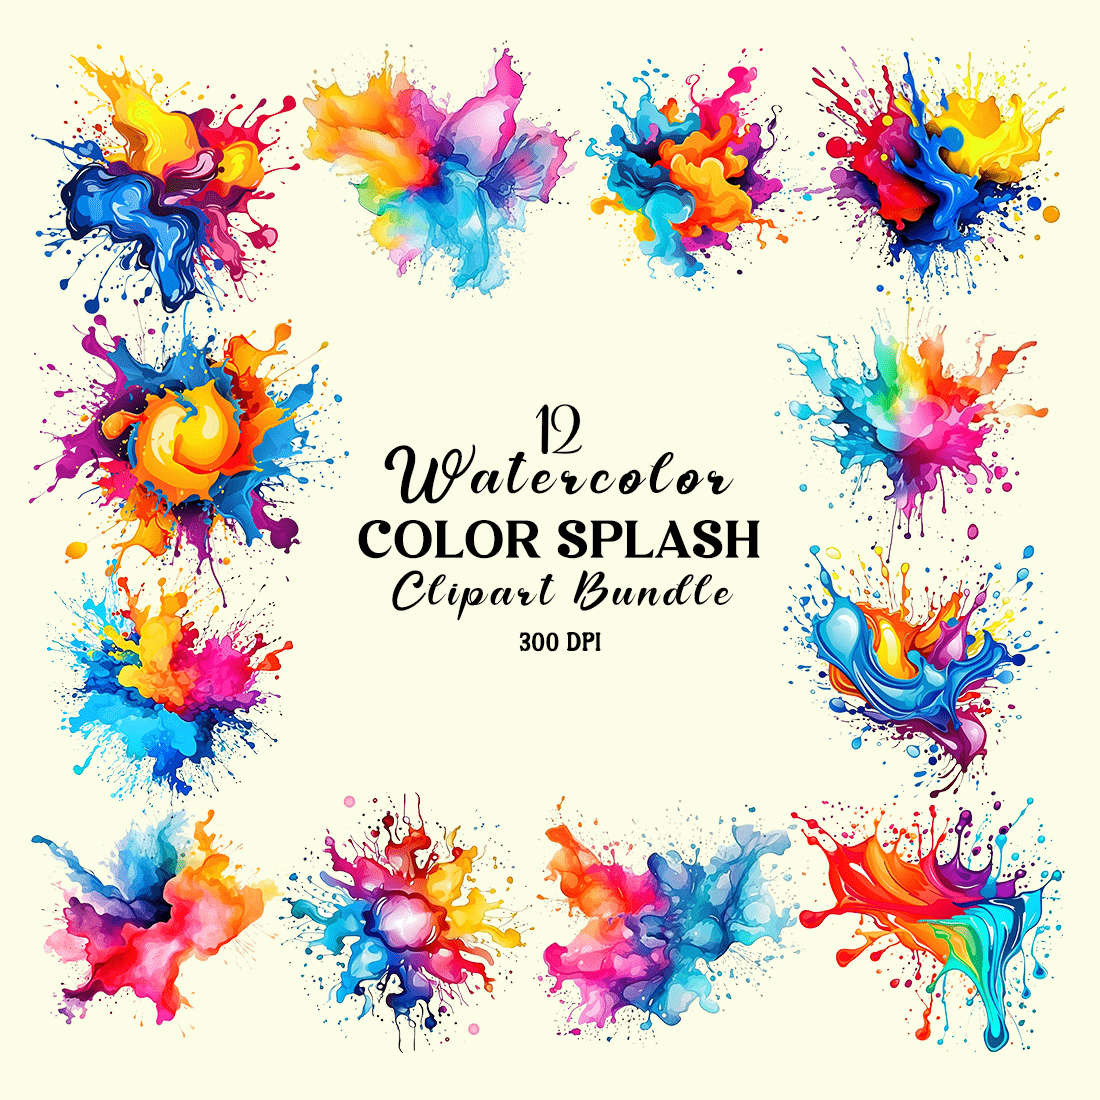 Watercolor Color Splash Clipart Bundle cover image.